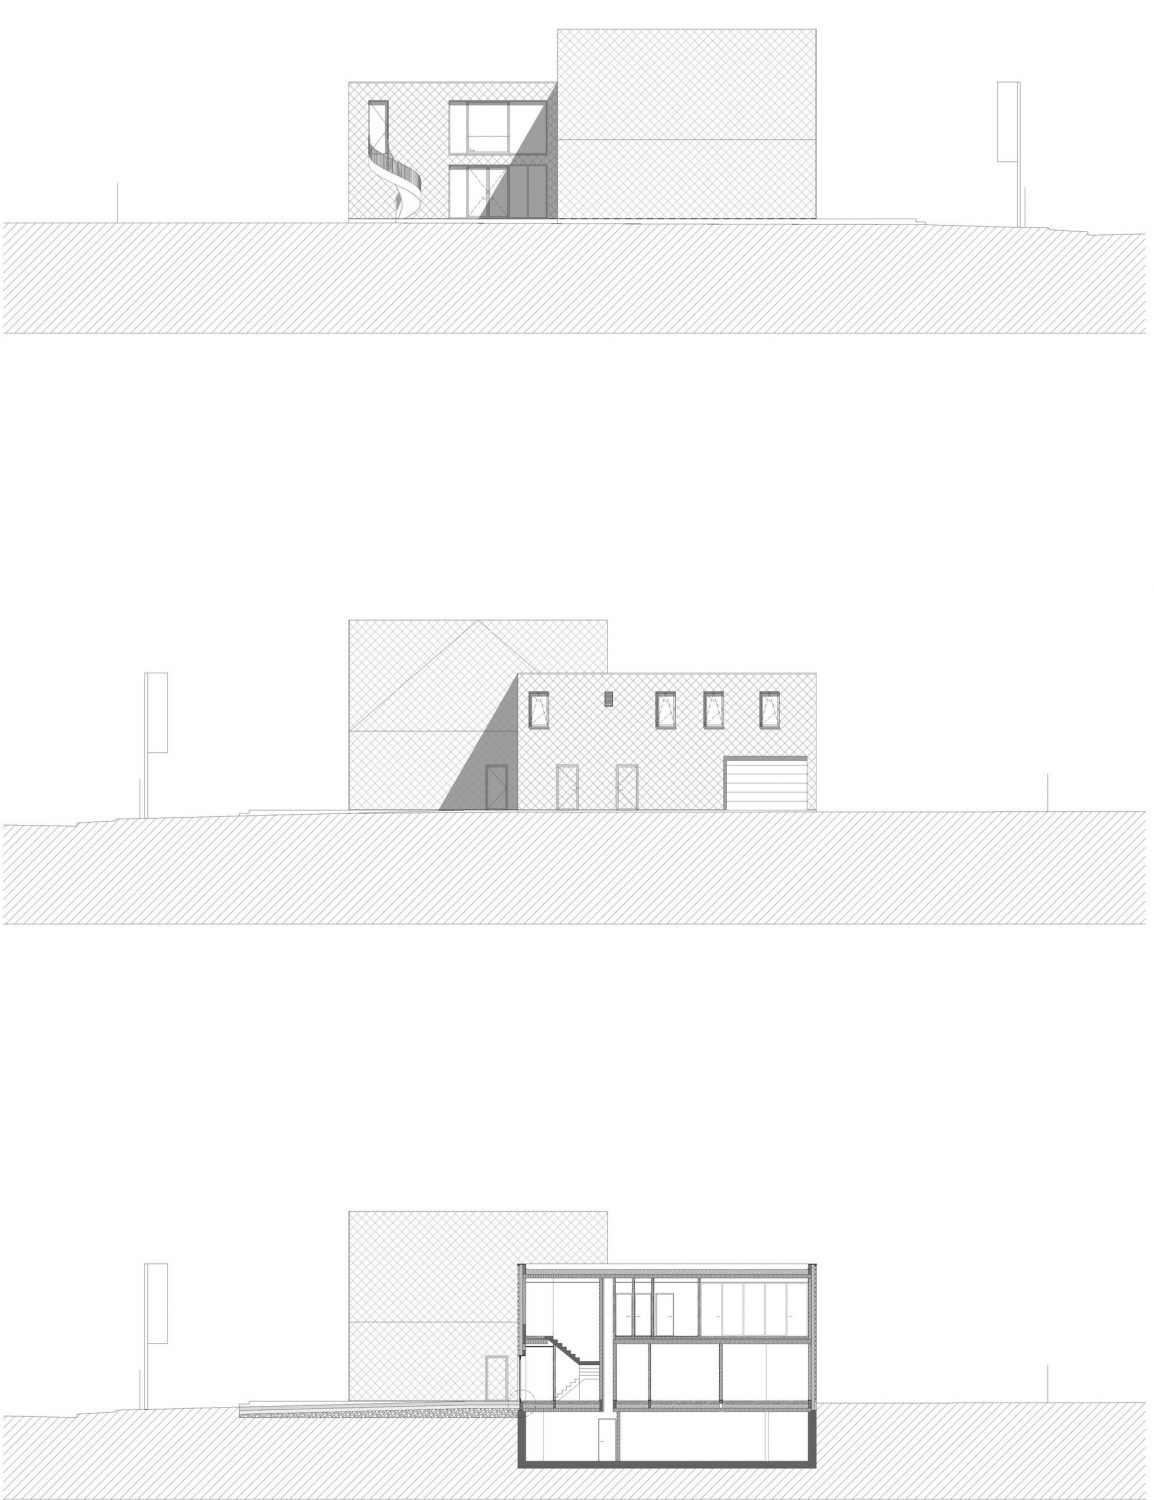 Drongen Furniture Store by WE-S architecten